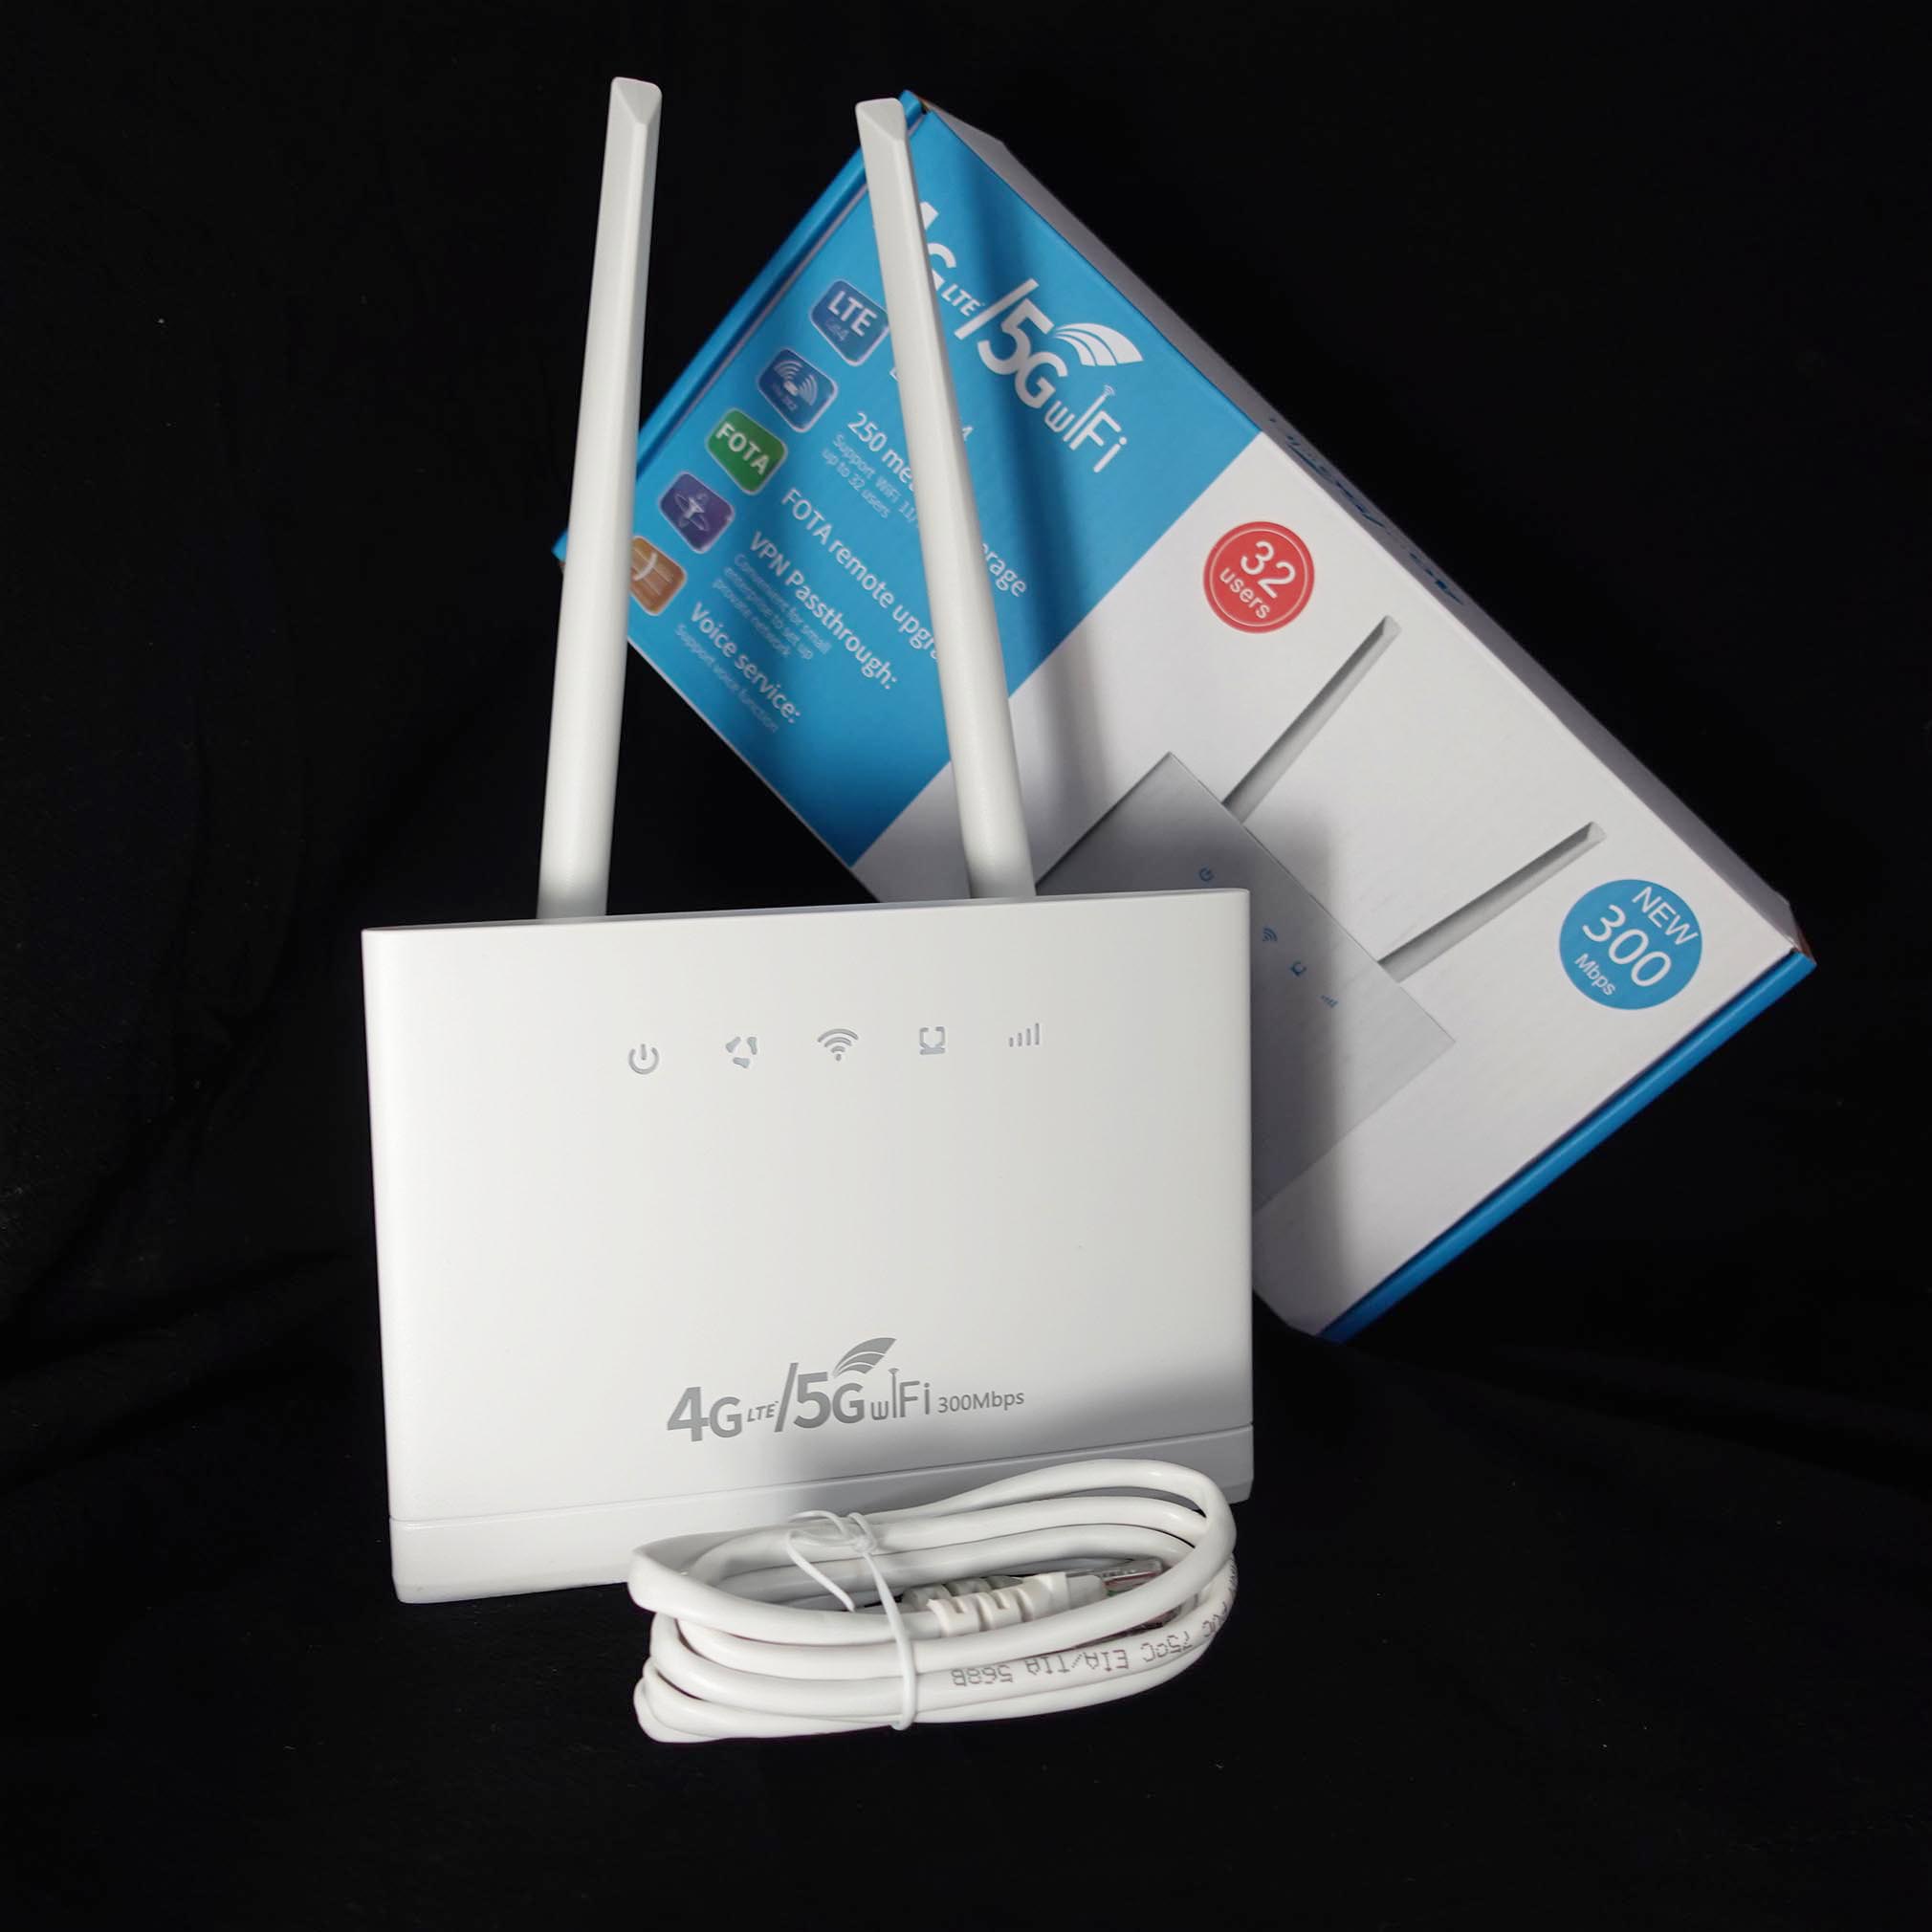 Bộ Phát Wifi 3G/4G R311 Pro – Tốc Độ Cao 150 Mbps, hỗ trợ 16 thiết bị